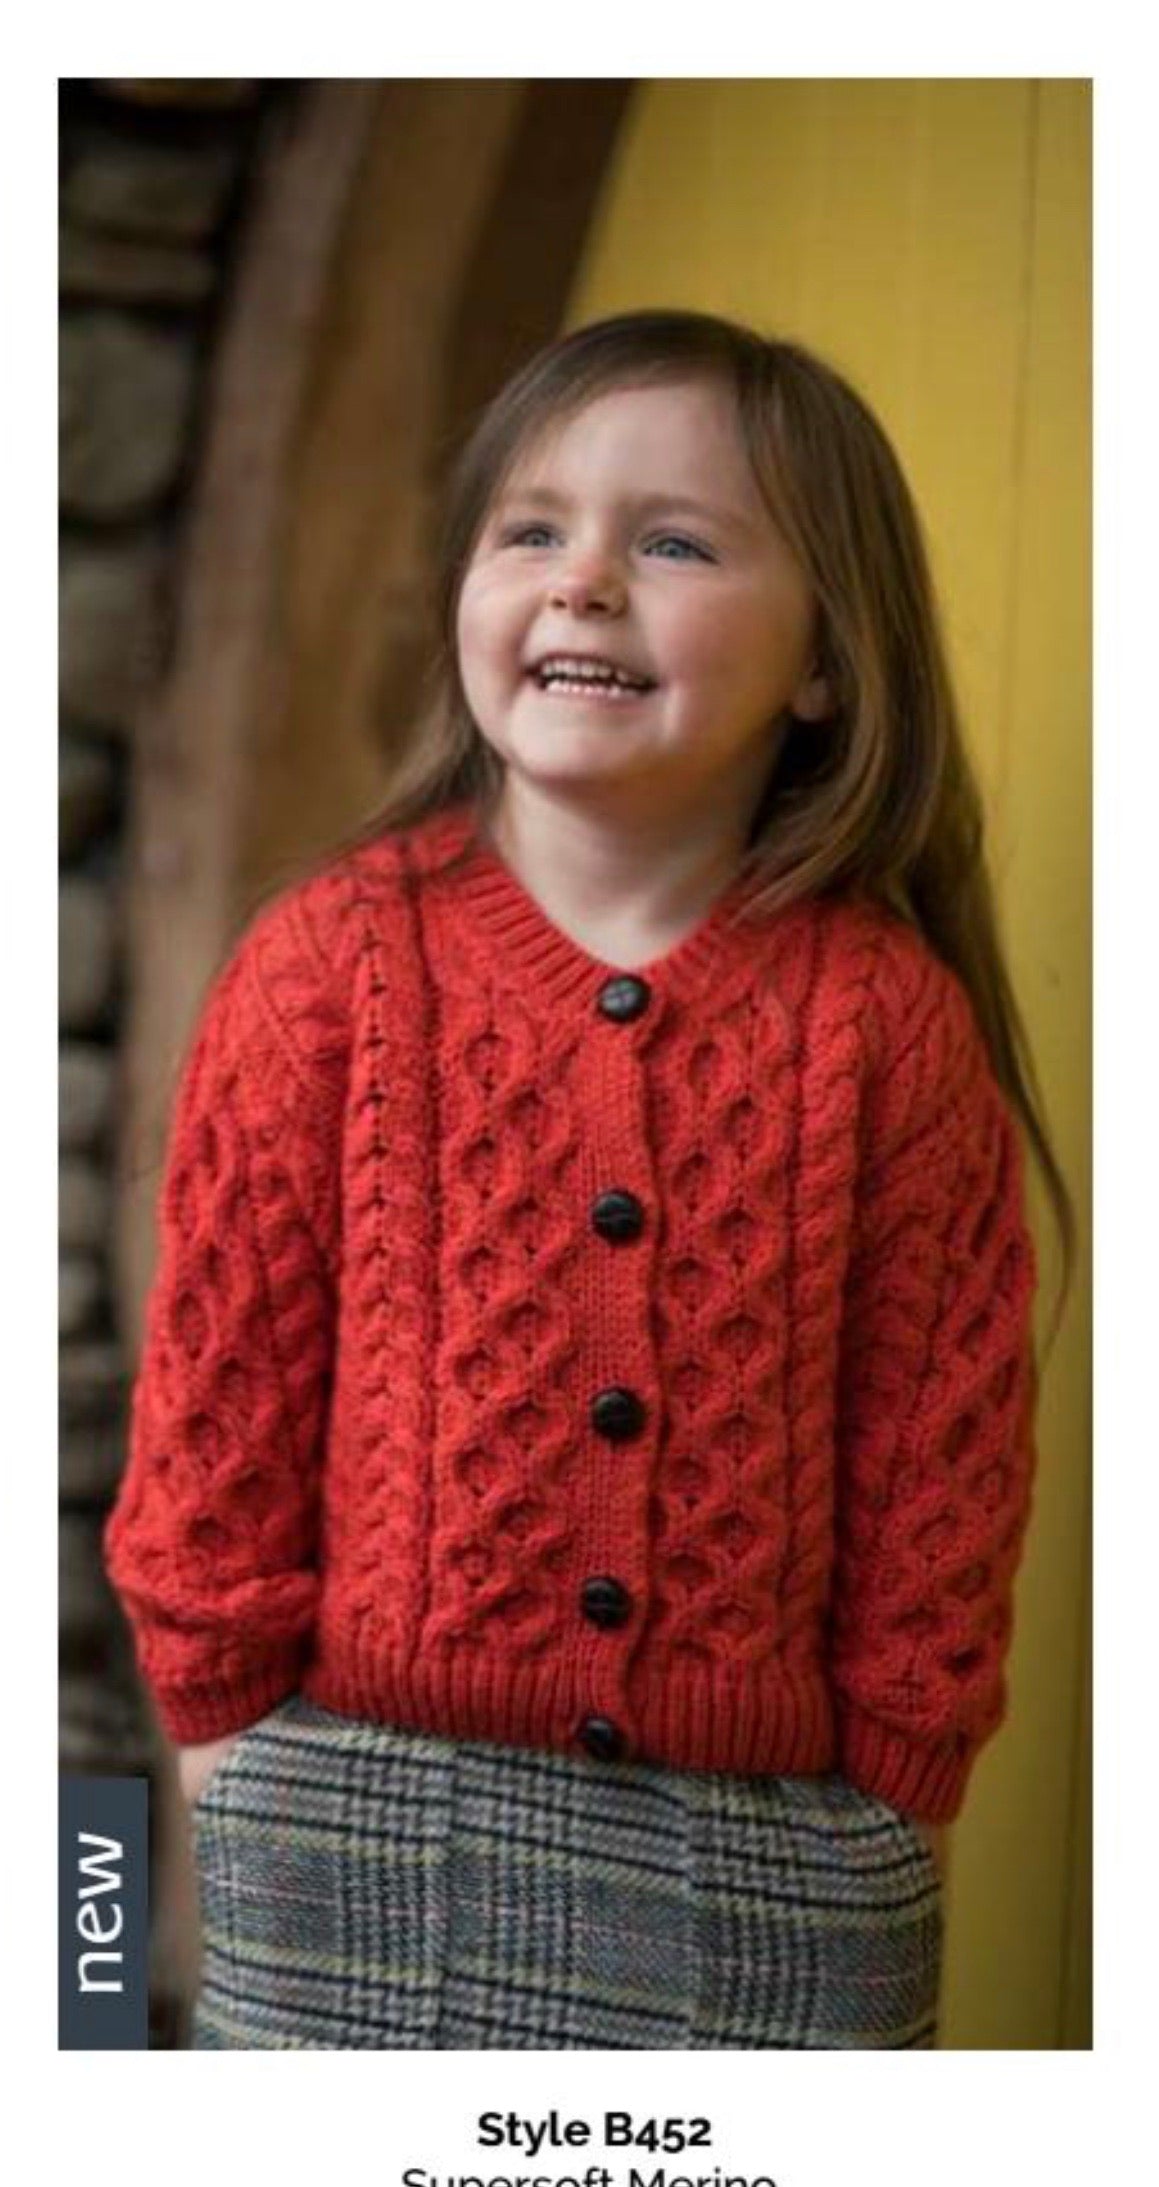 Aran woolen Mills childs button sweater B452 660